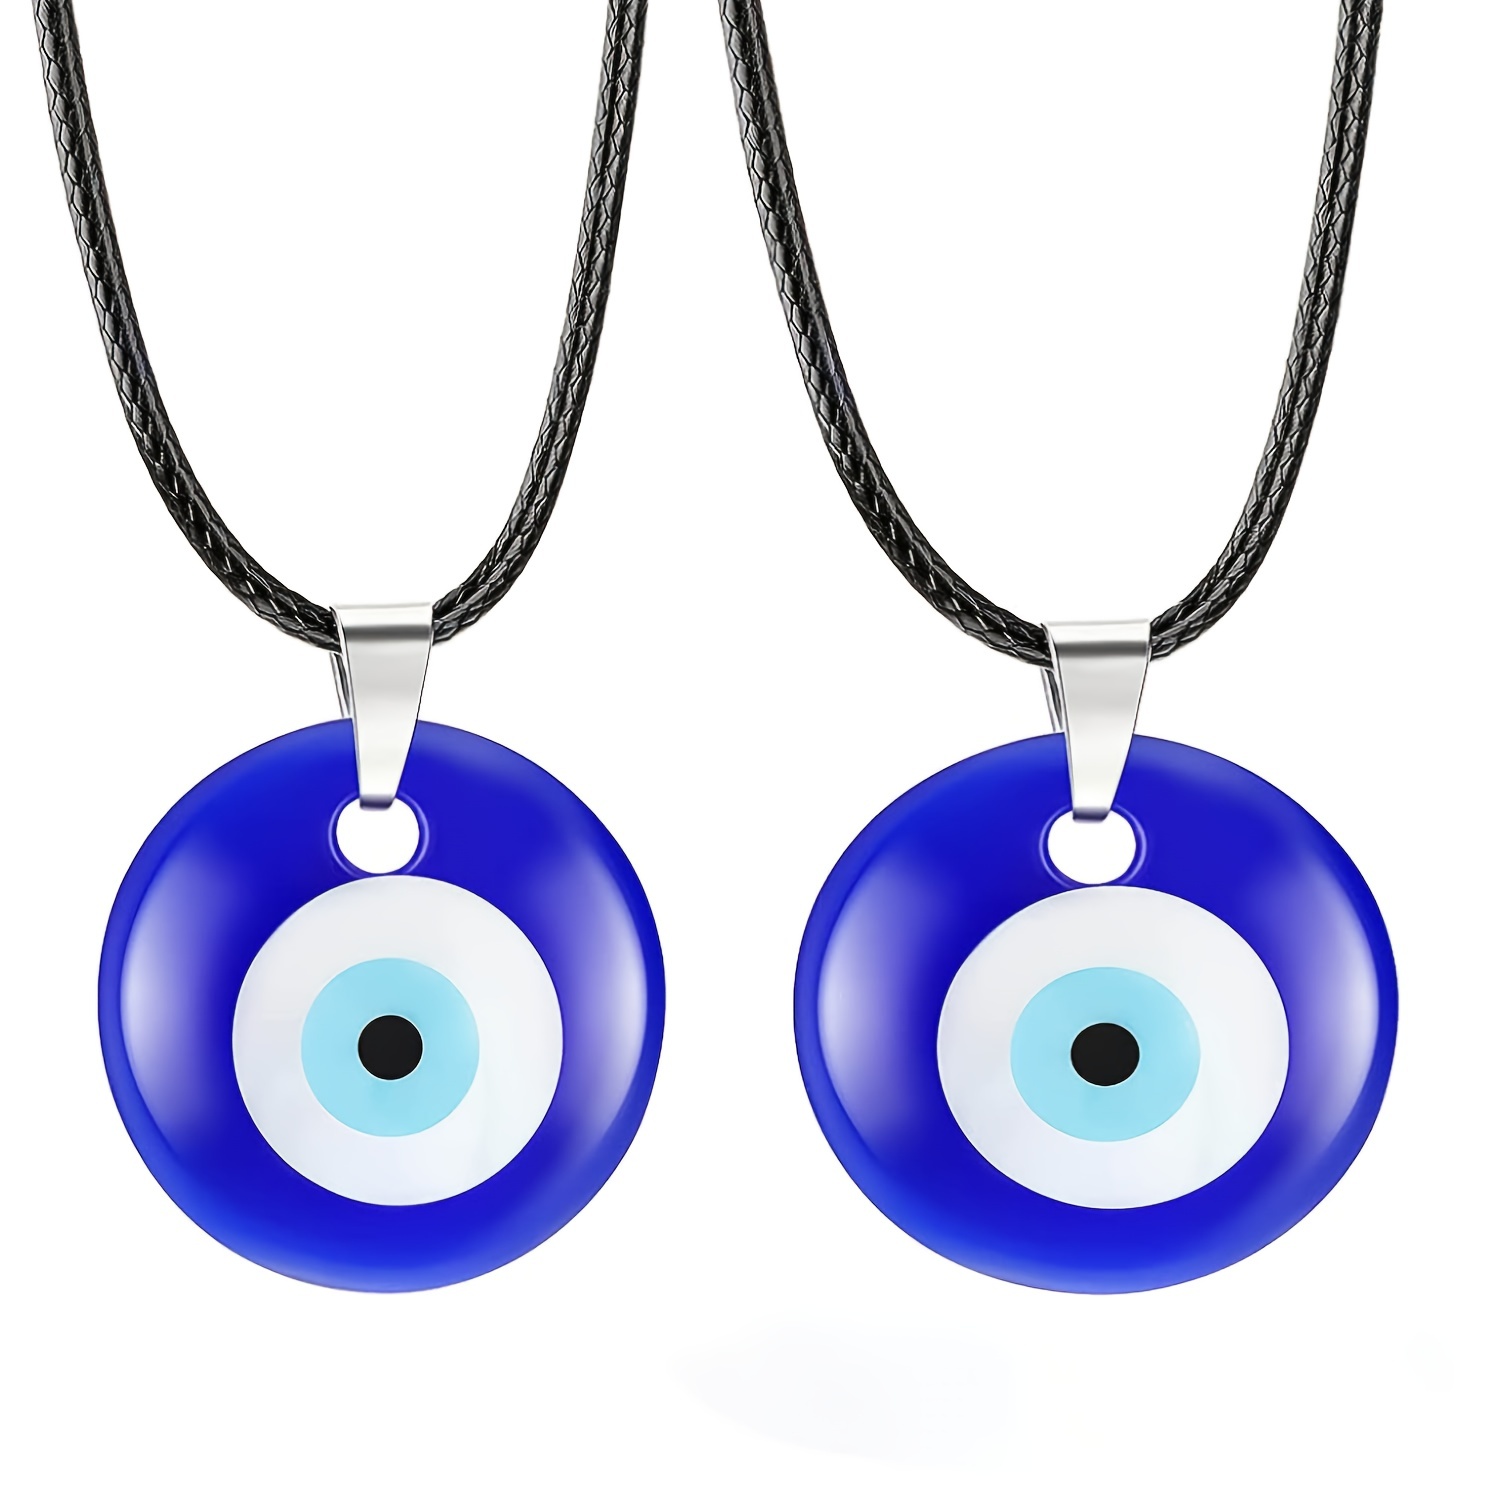 Collier fantaisie amulette oeil bleu en argent et turquoise